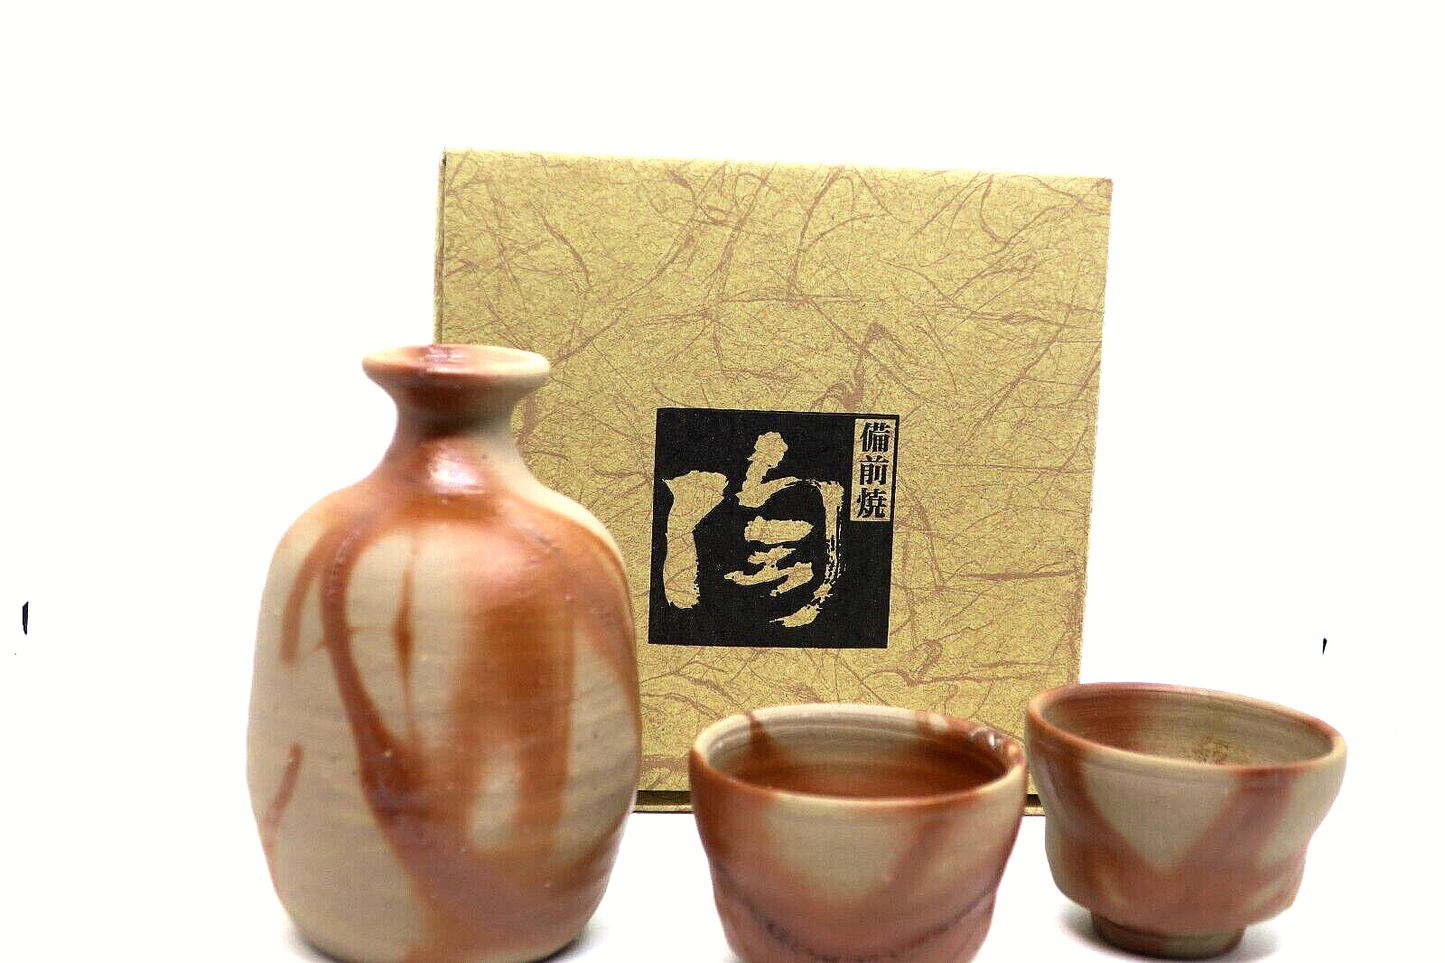 Japanese tokkuri sake bottle and sake cups set Bizen ware From Japan